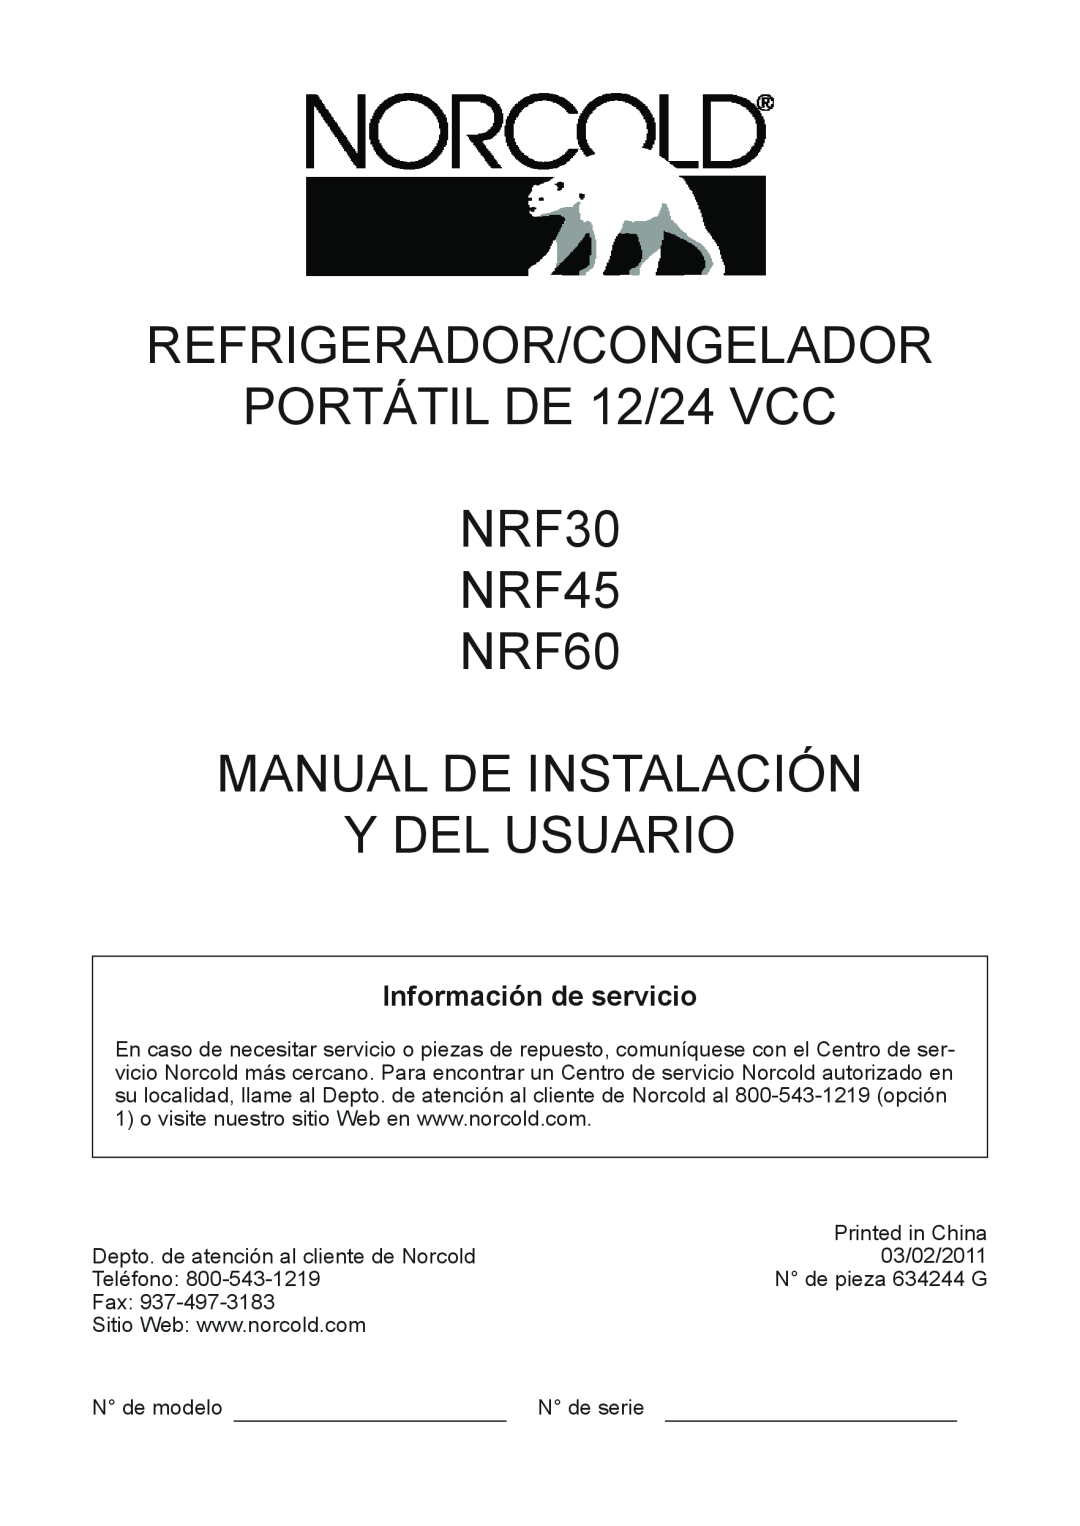 Norcold manual REFRIGERADOR/CONGELADOR PORTÁTIL DE 12/24 VCC NRF30 NRF45 NRF60, Manual De Instalación Y Del Usuario 